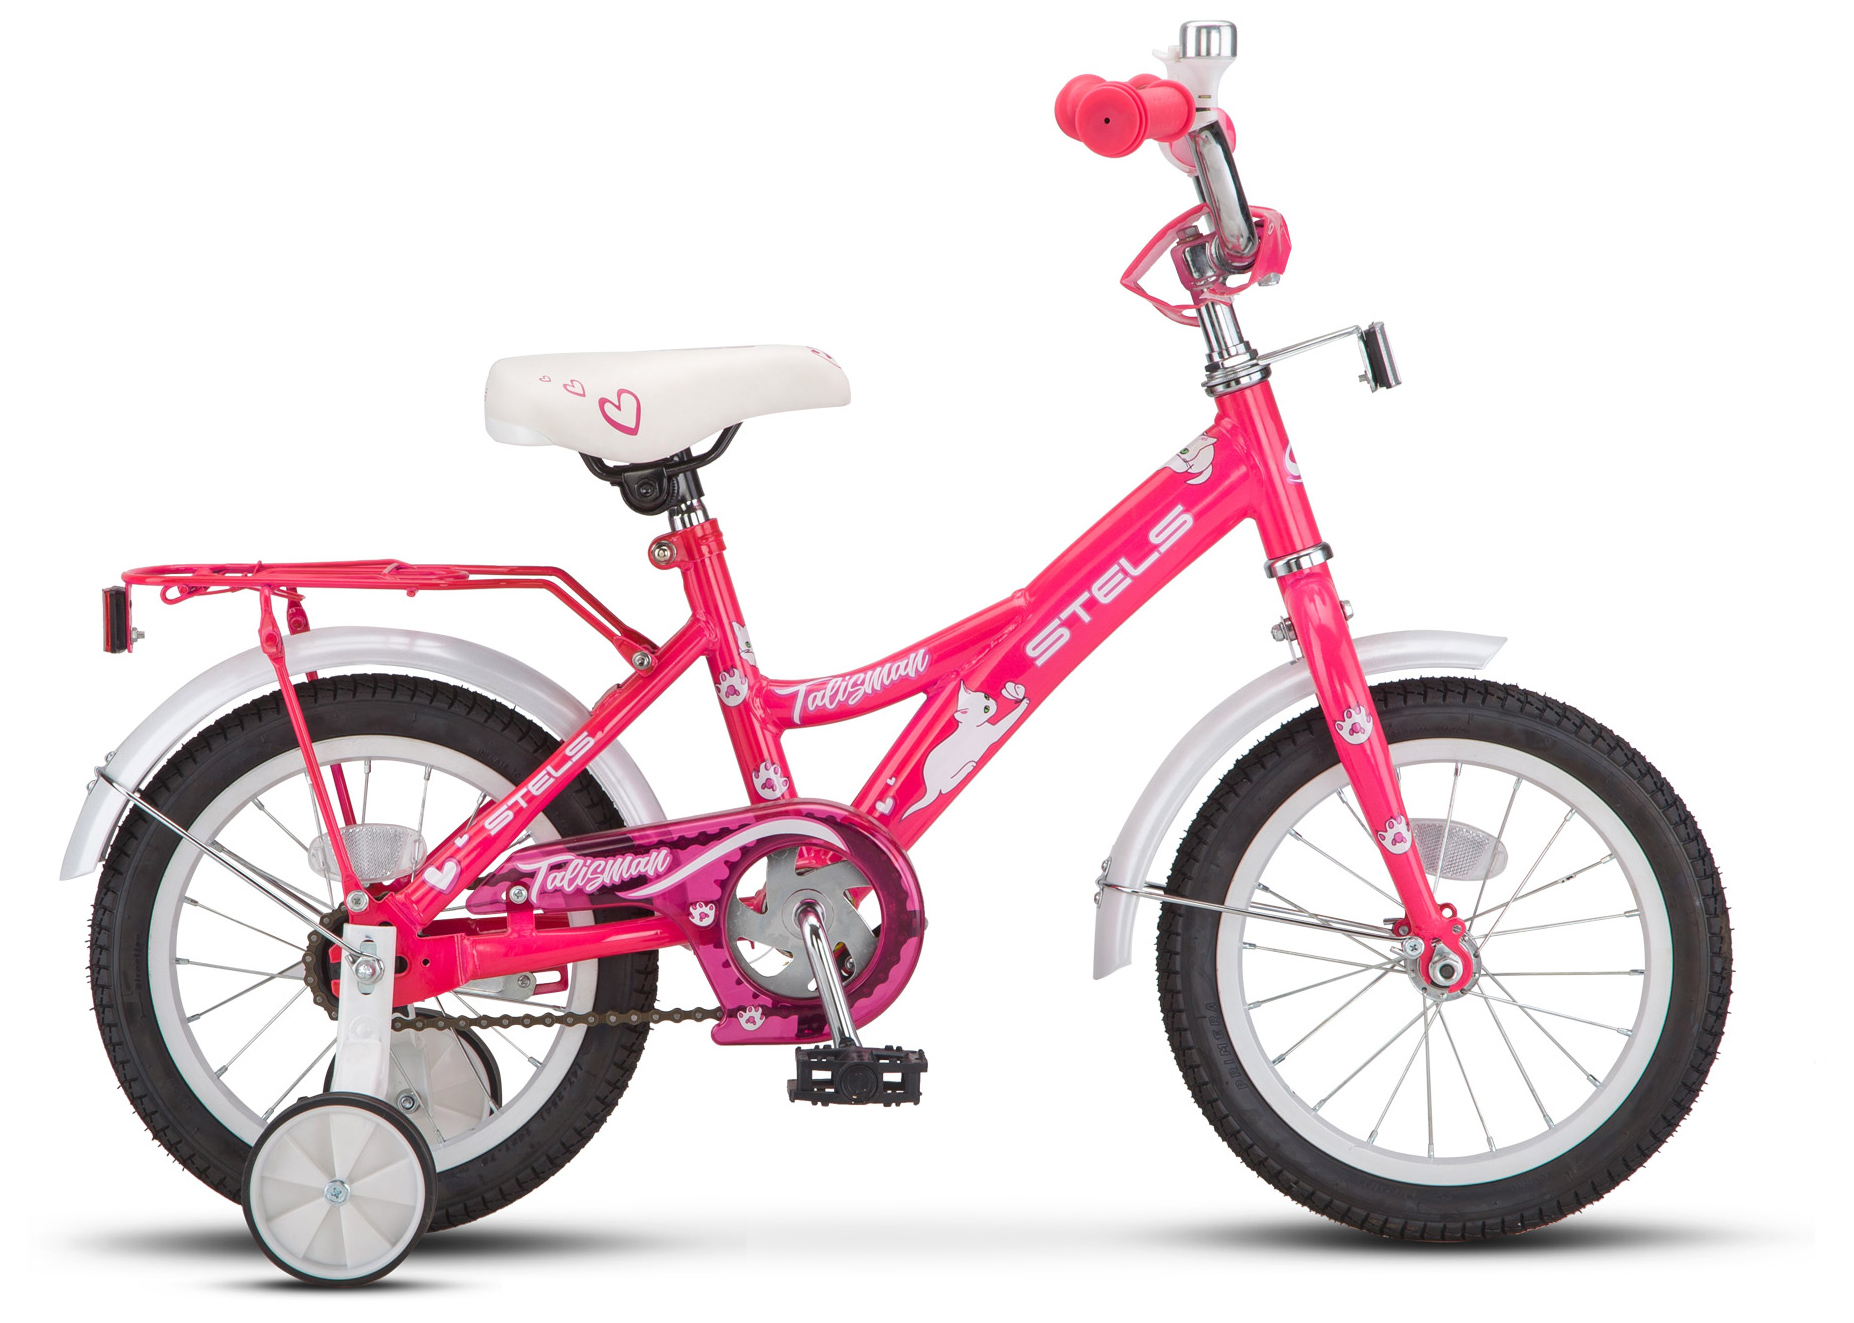  Велосипед трехколесный детский велосипед Stels Talisman Lady 14 Z010 2019